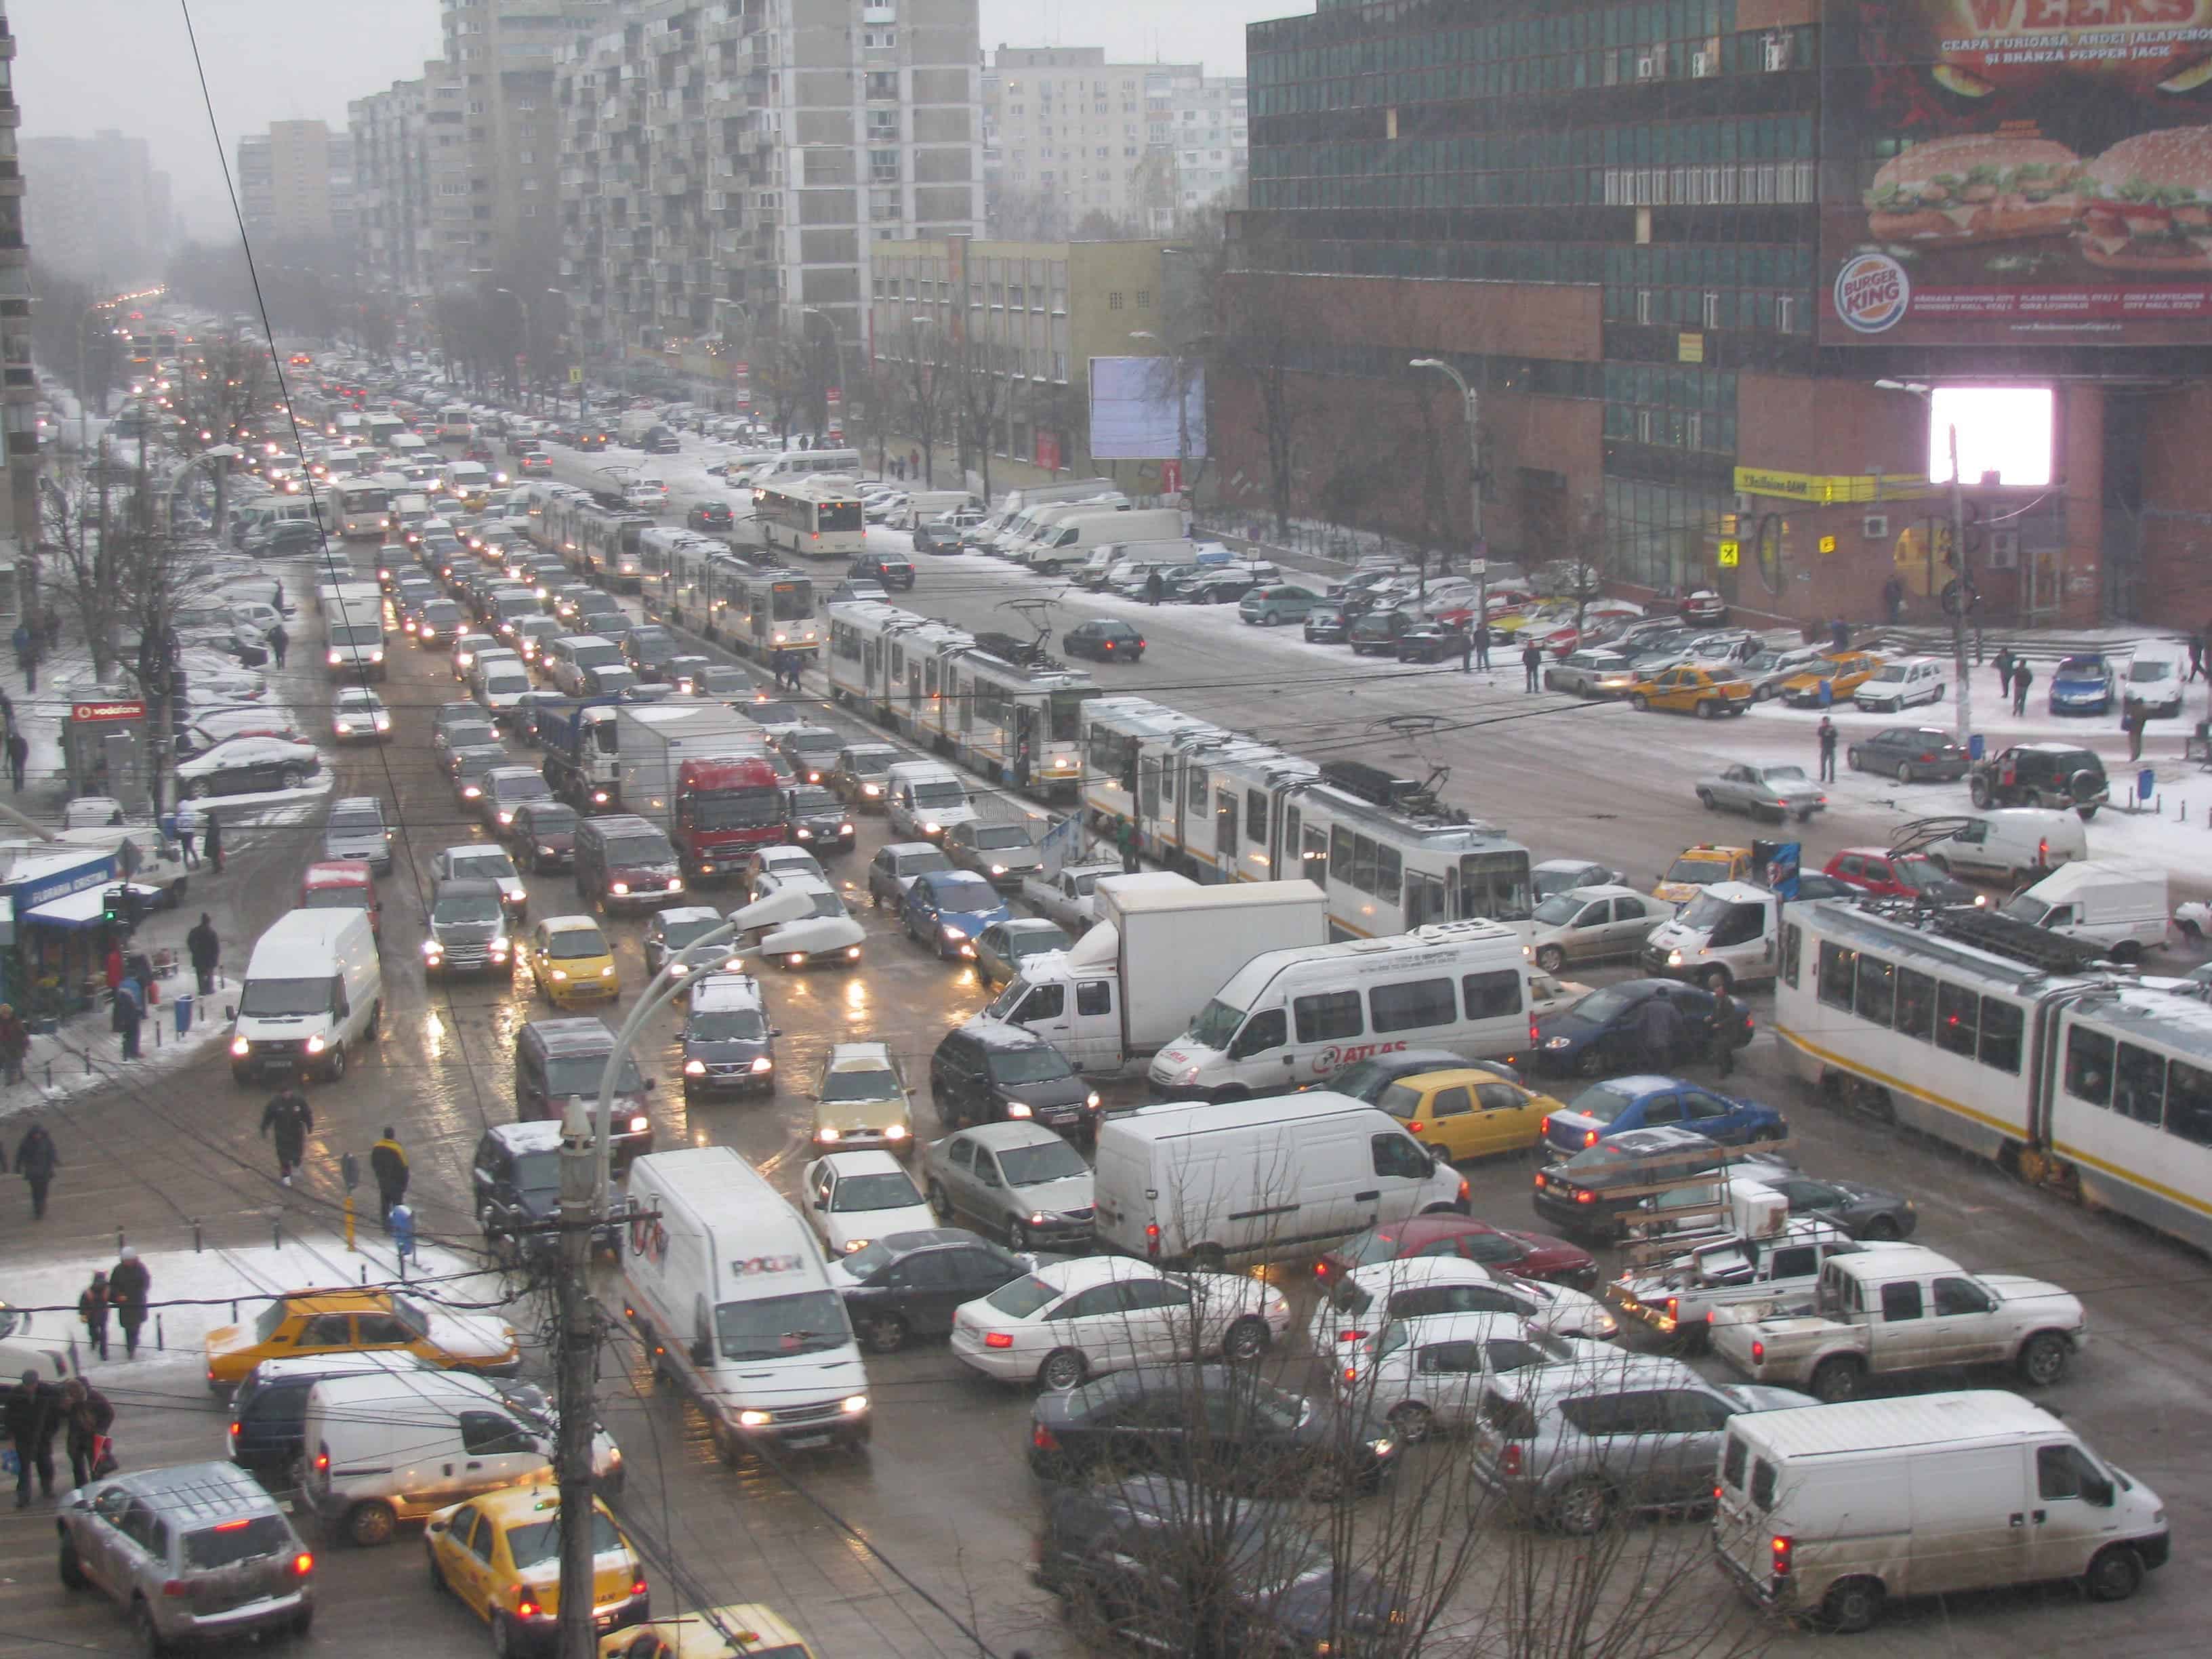 Ð ÐµÐ·ÑÐ»ÑÐ°Ñ Ñ Ð¸Ð·Ð¾Ð±ÑÐ°Ð¶ÐµÐ½Ð¸Ðµ Ð·Ð° Scientists present concept for the elimination of traffic jams